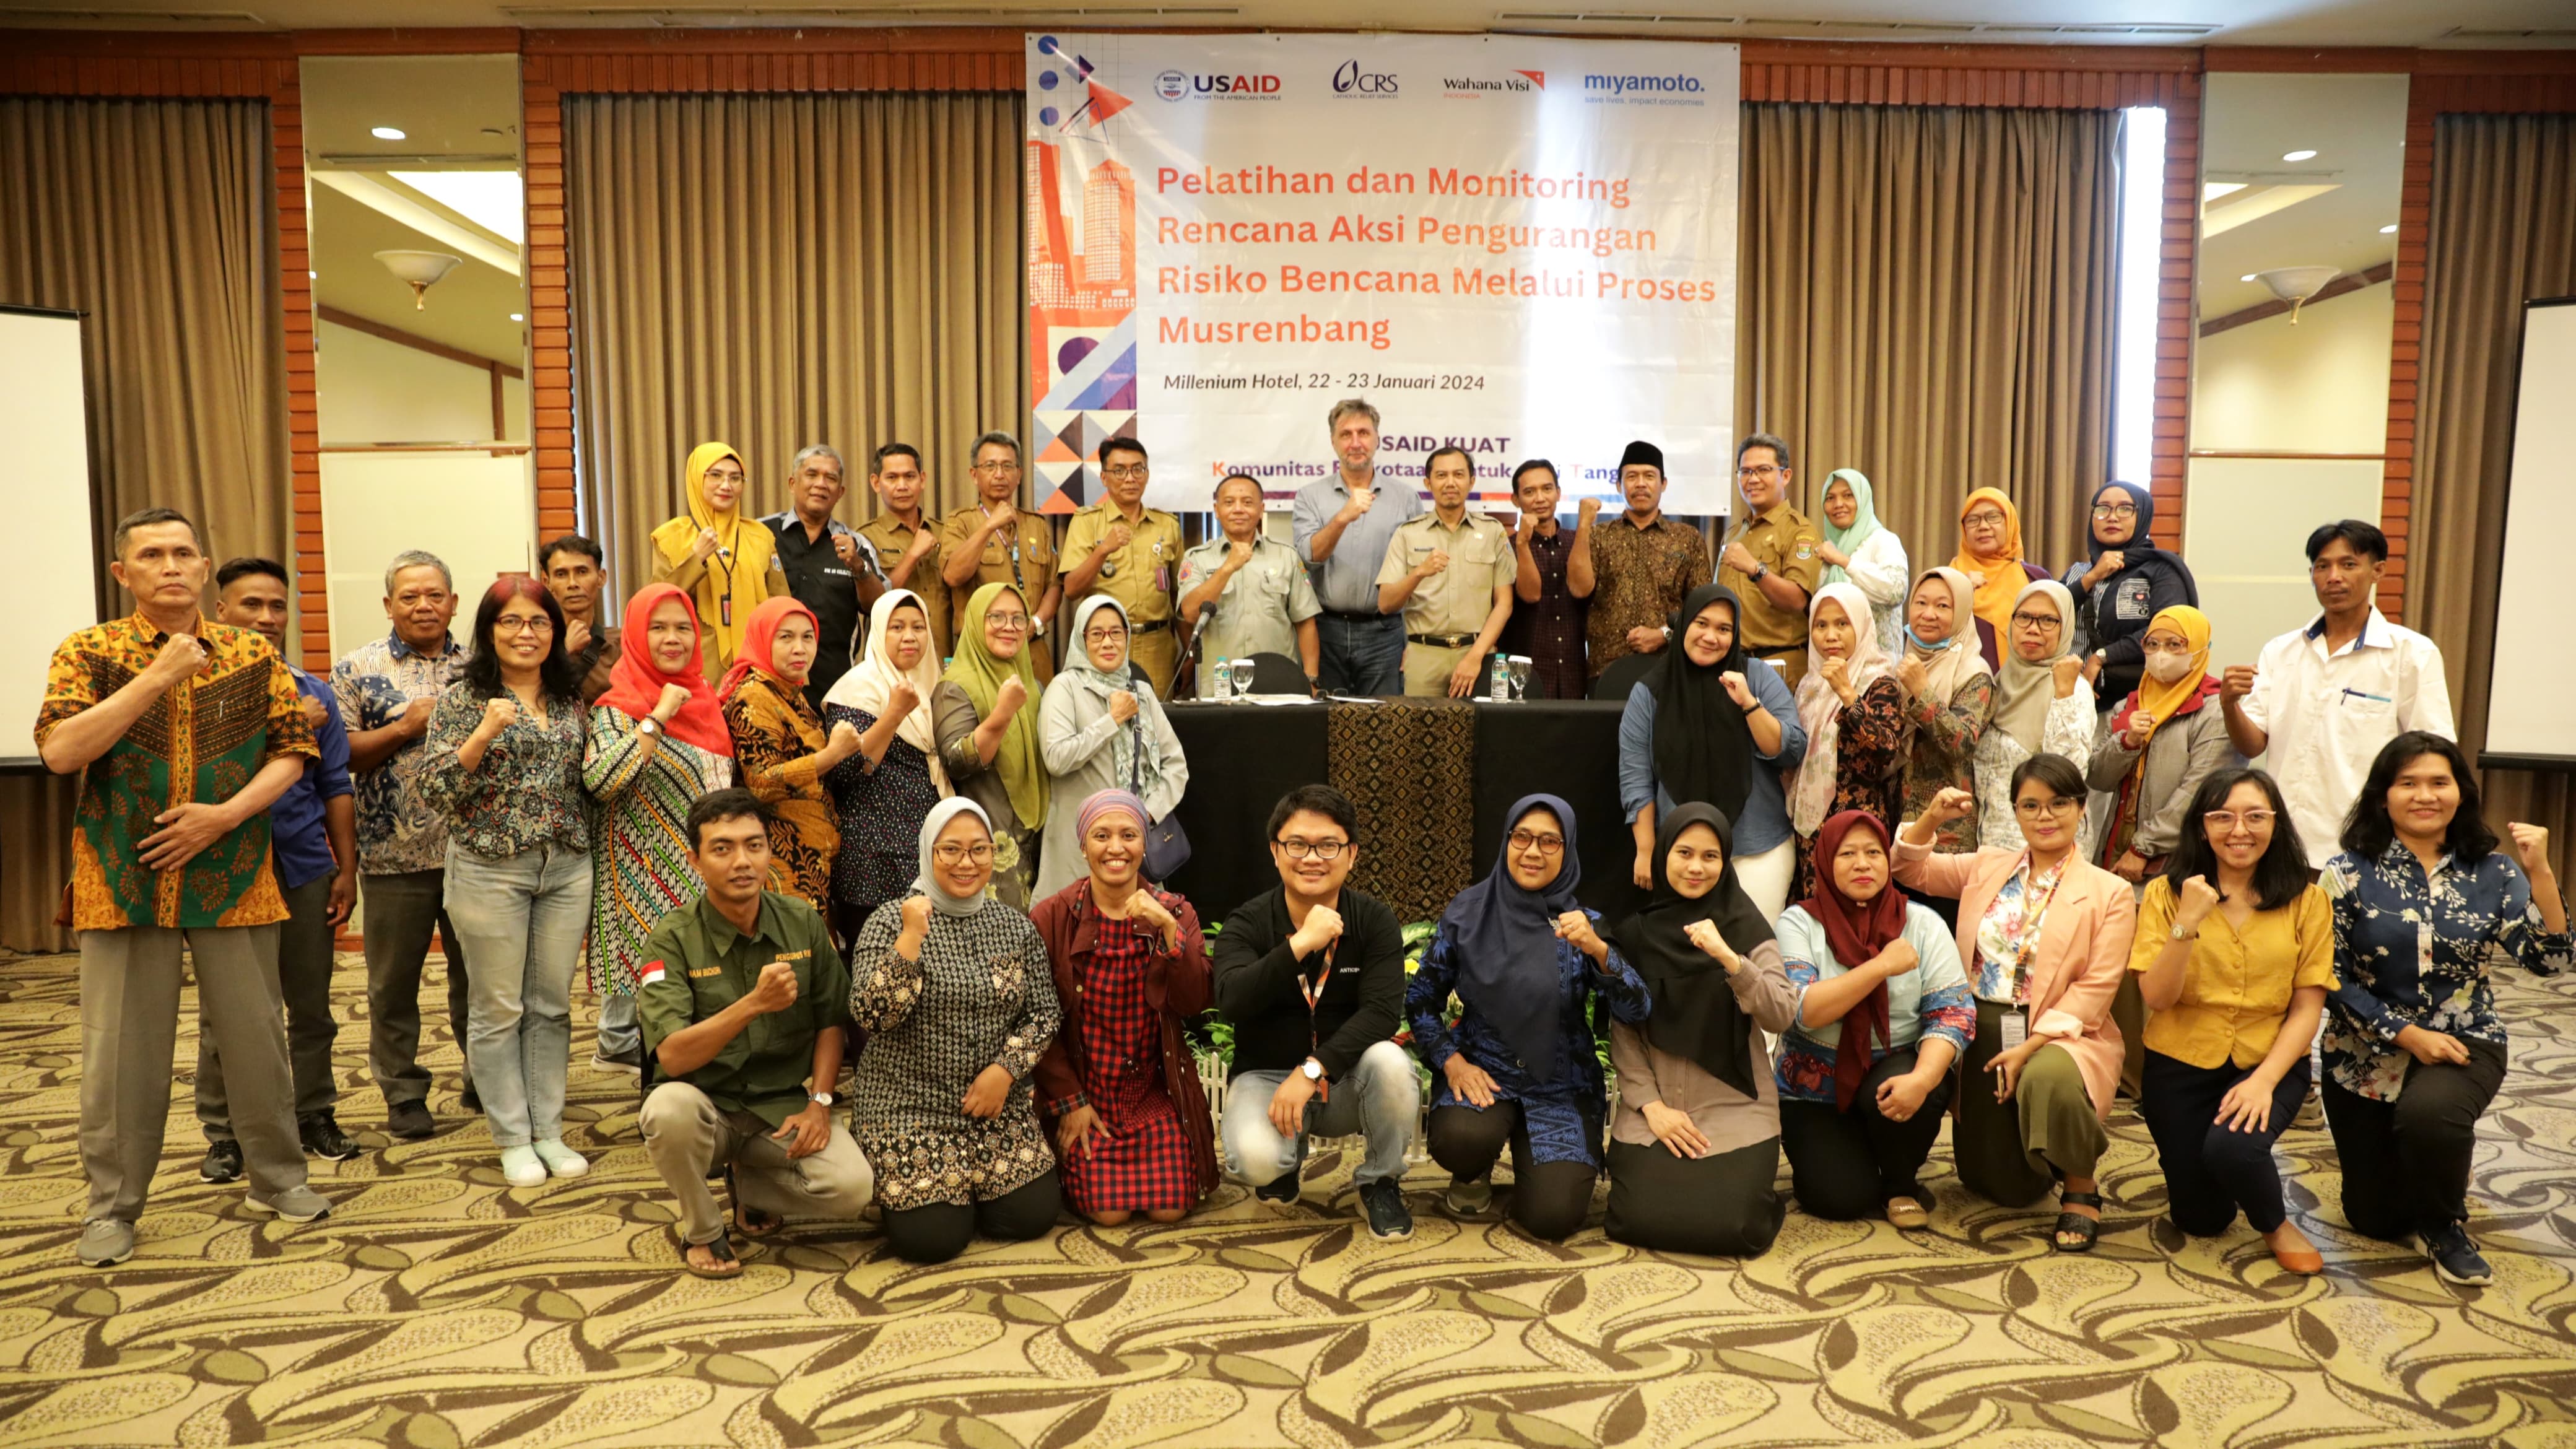 Wahana Visi Indonesia (WVI) Pelatihan dan Monitoring Rencana Aksi Pengurangan Risiko Bencana